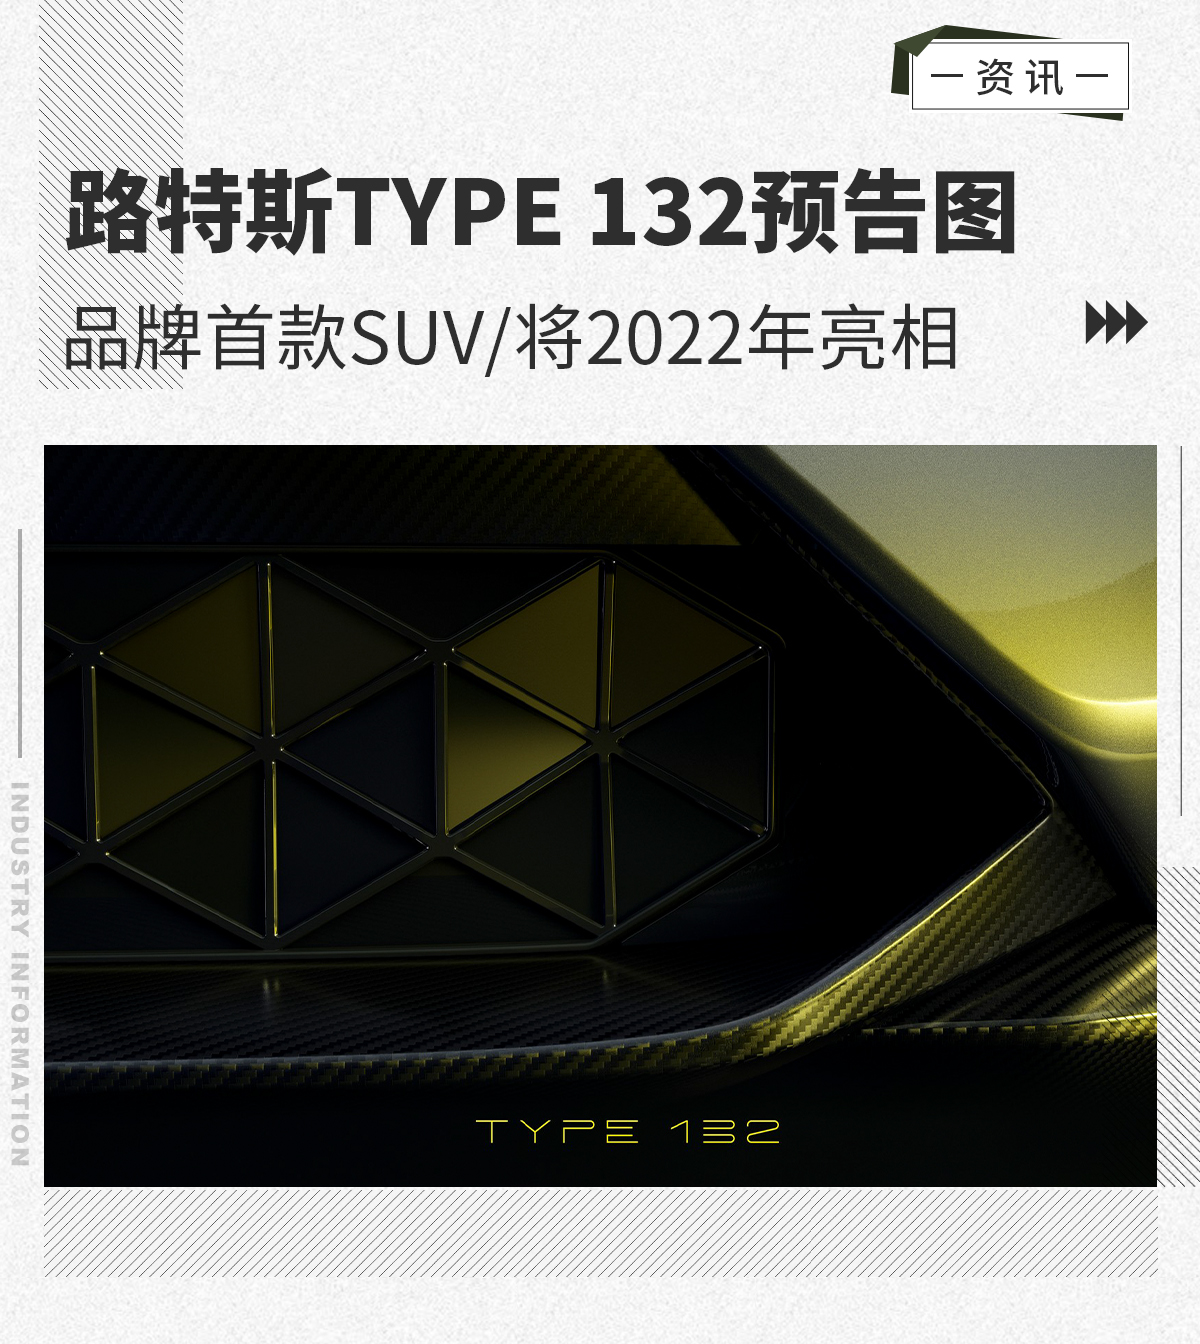 品牌首款电动SUV路特斯TYPE132预告图发布